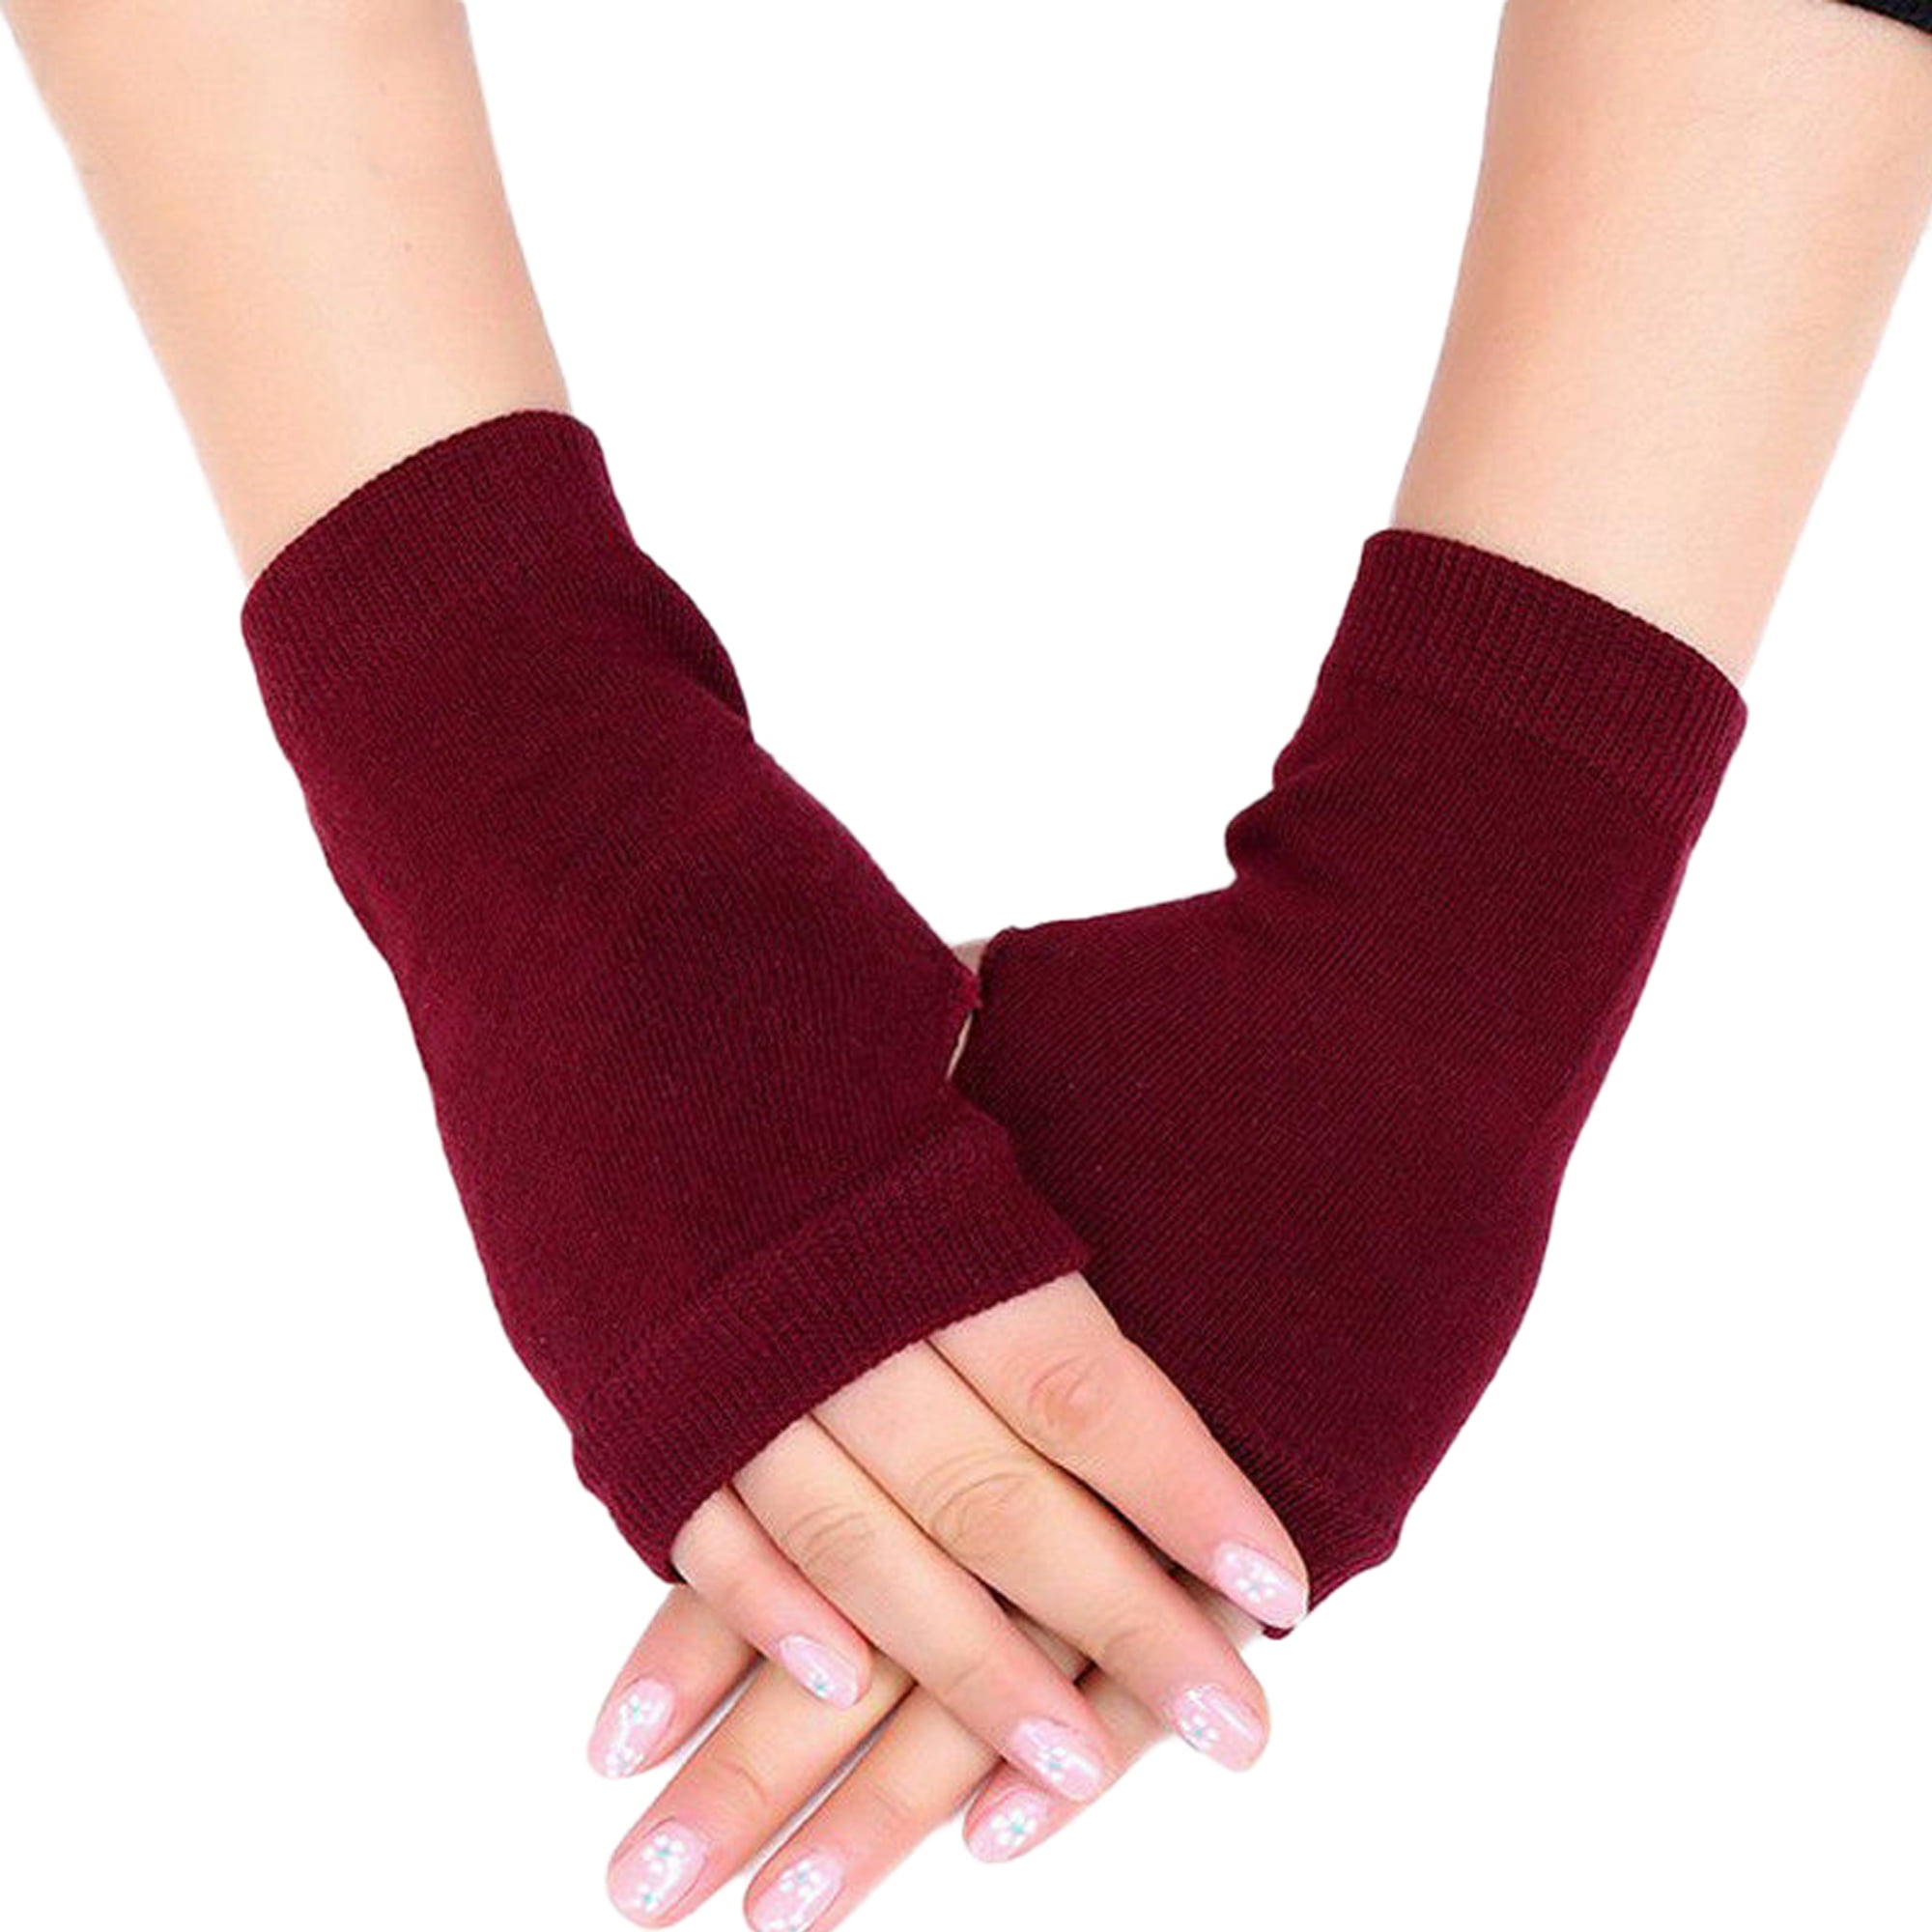 Fashion Women Winter Knit Wool Thicker Cashmere Warm Gloves Fingerless Mittens 